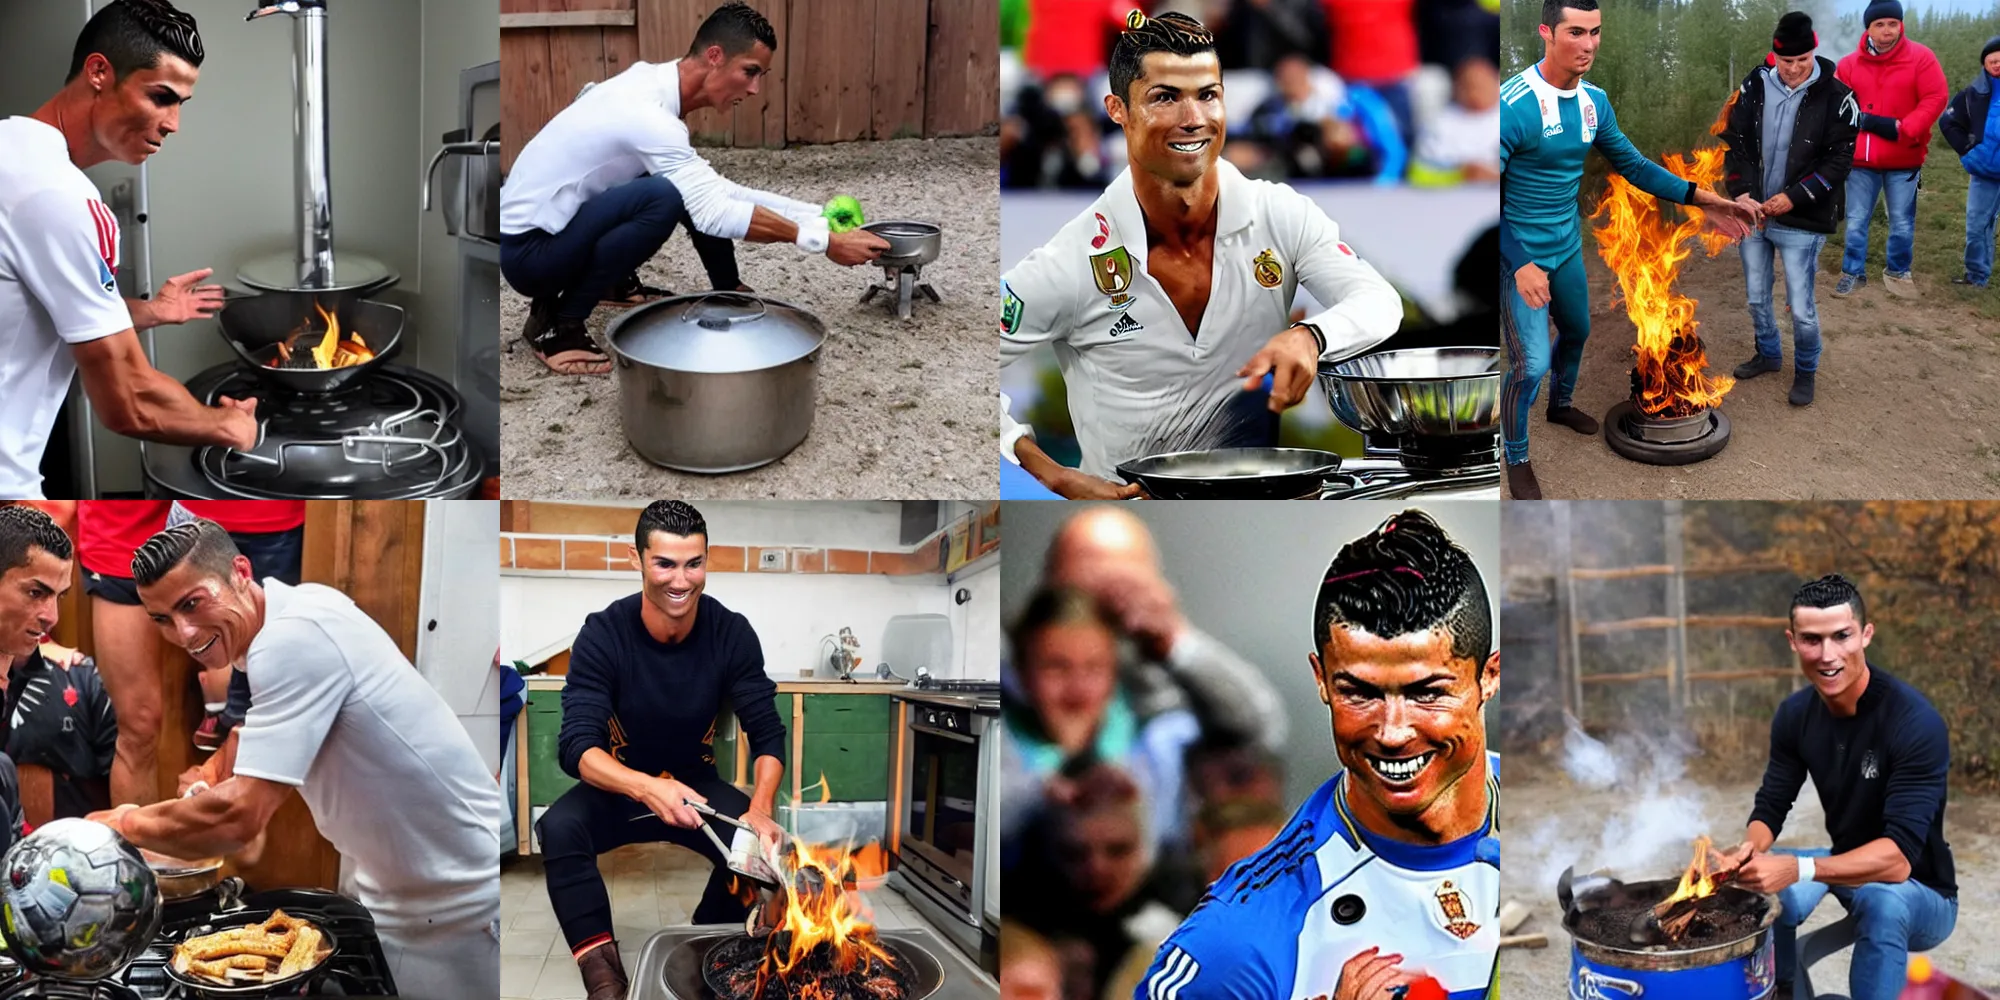 Prompt: Cristiano Ronaldo rides a stove in a Russian village